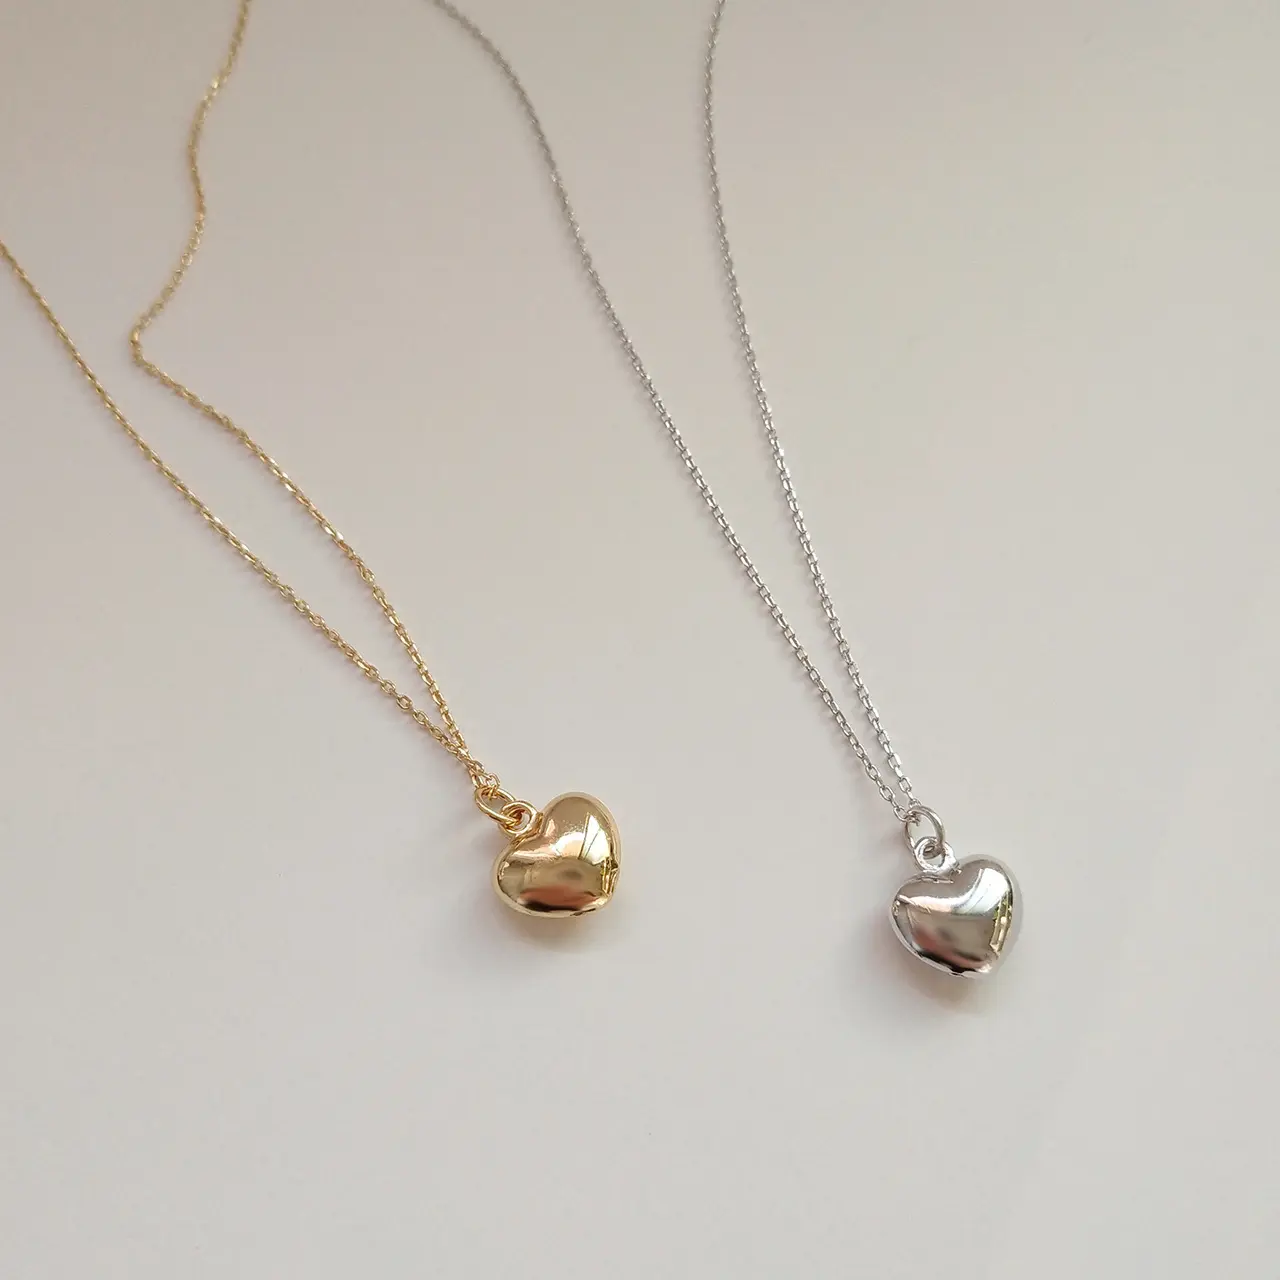 Серебряное ожерелье 925 пробы для женщин, ювелирные украшения, первоначальное заявление, сердце любви, оптовая продажа, 2022 г.